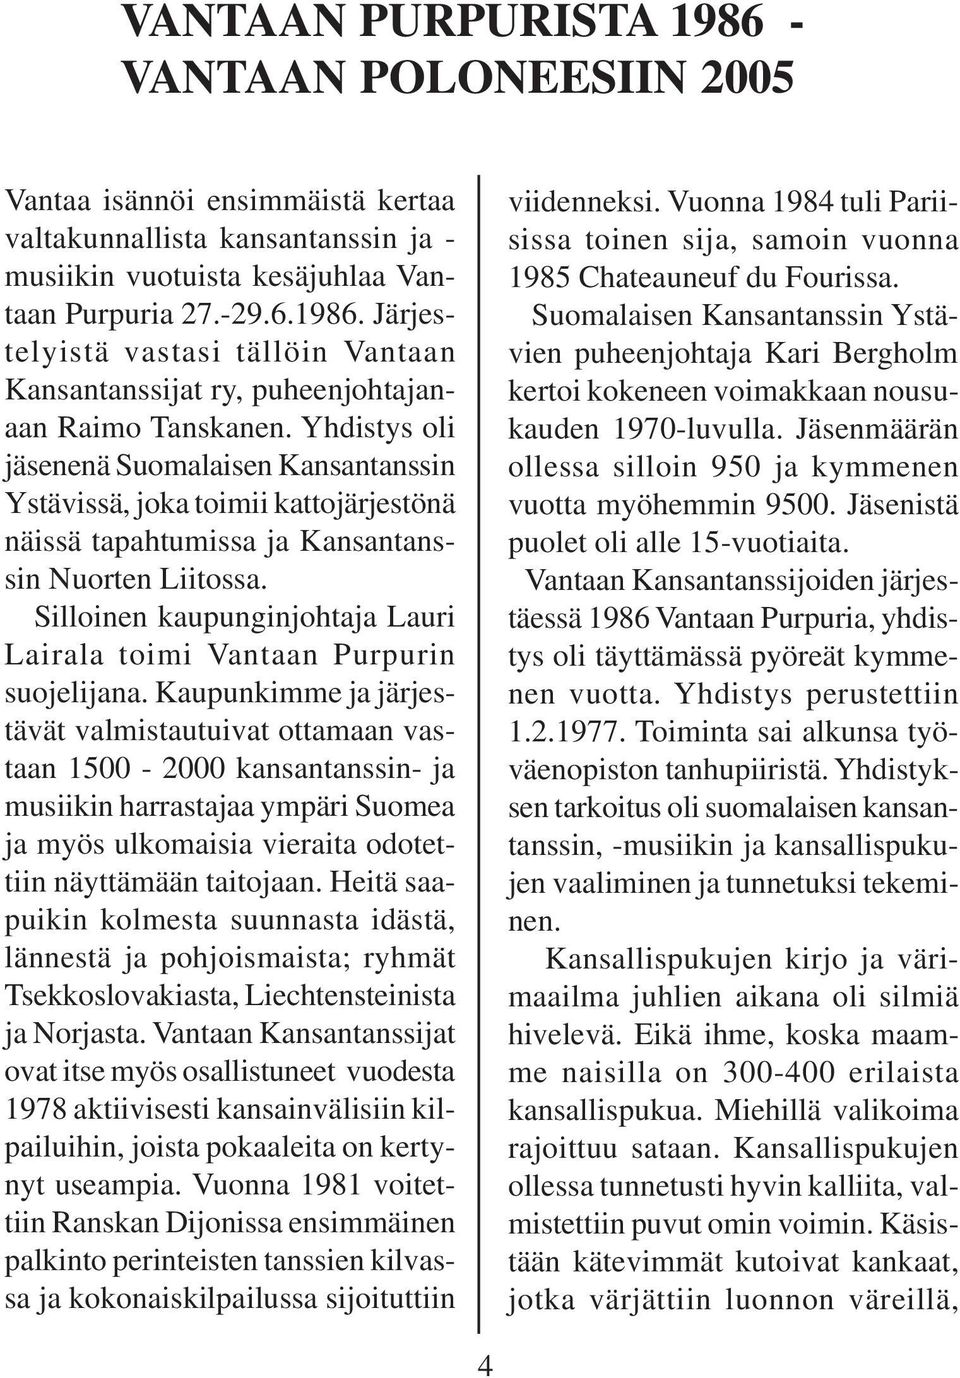 Silloinen kaupunginjohtaja Lauri Lairala toimi Vantaan Purpurin suojelijana.